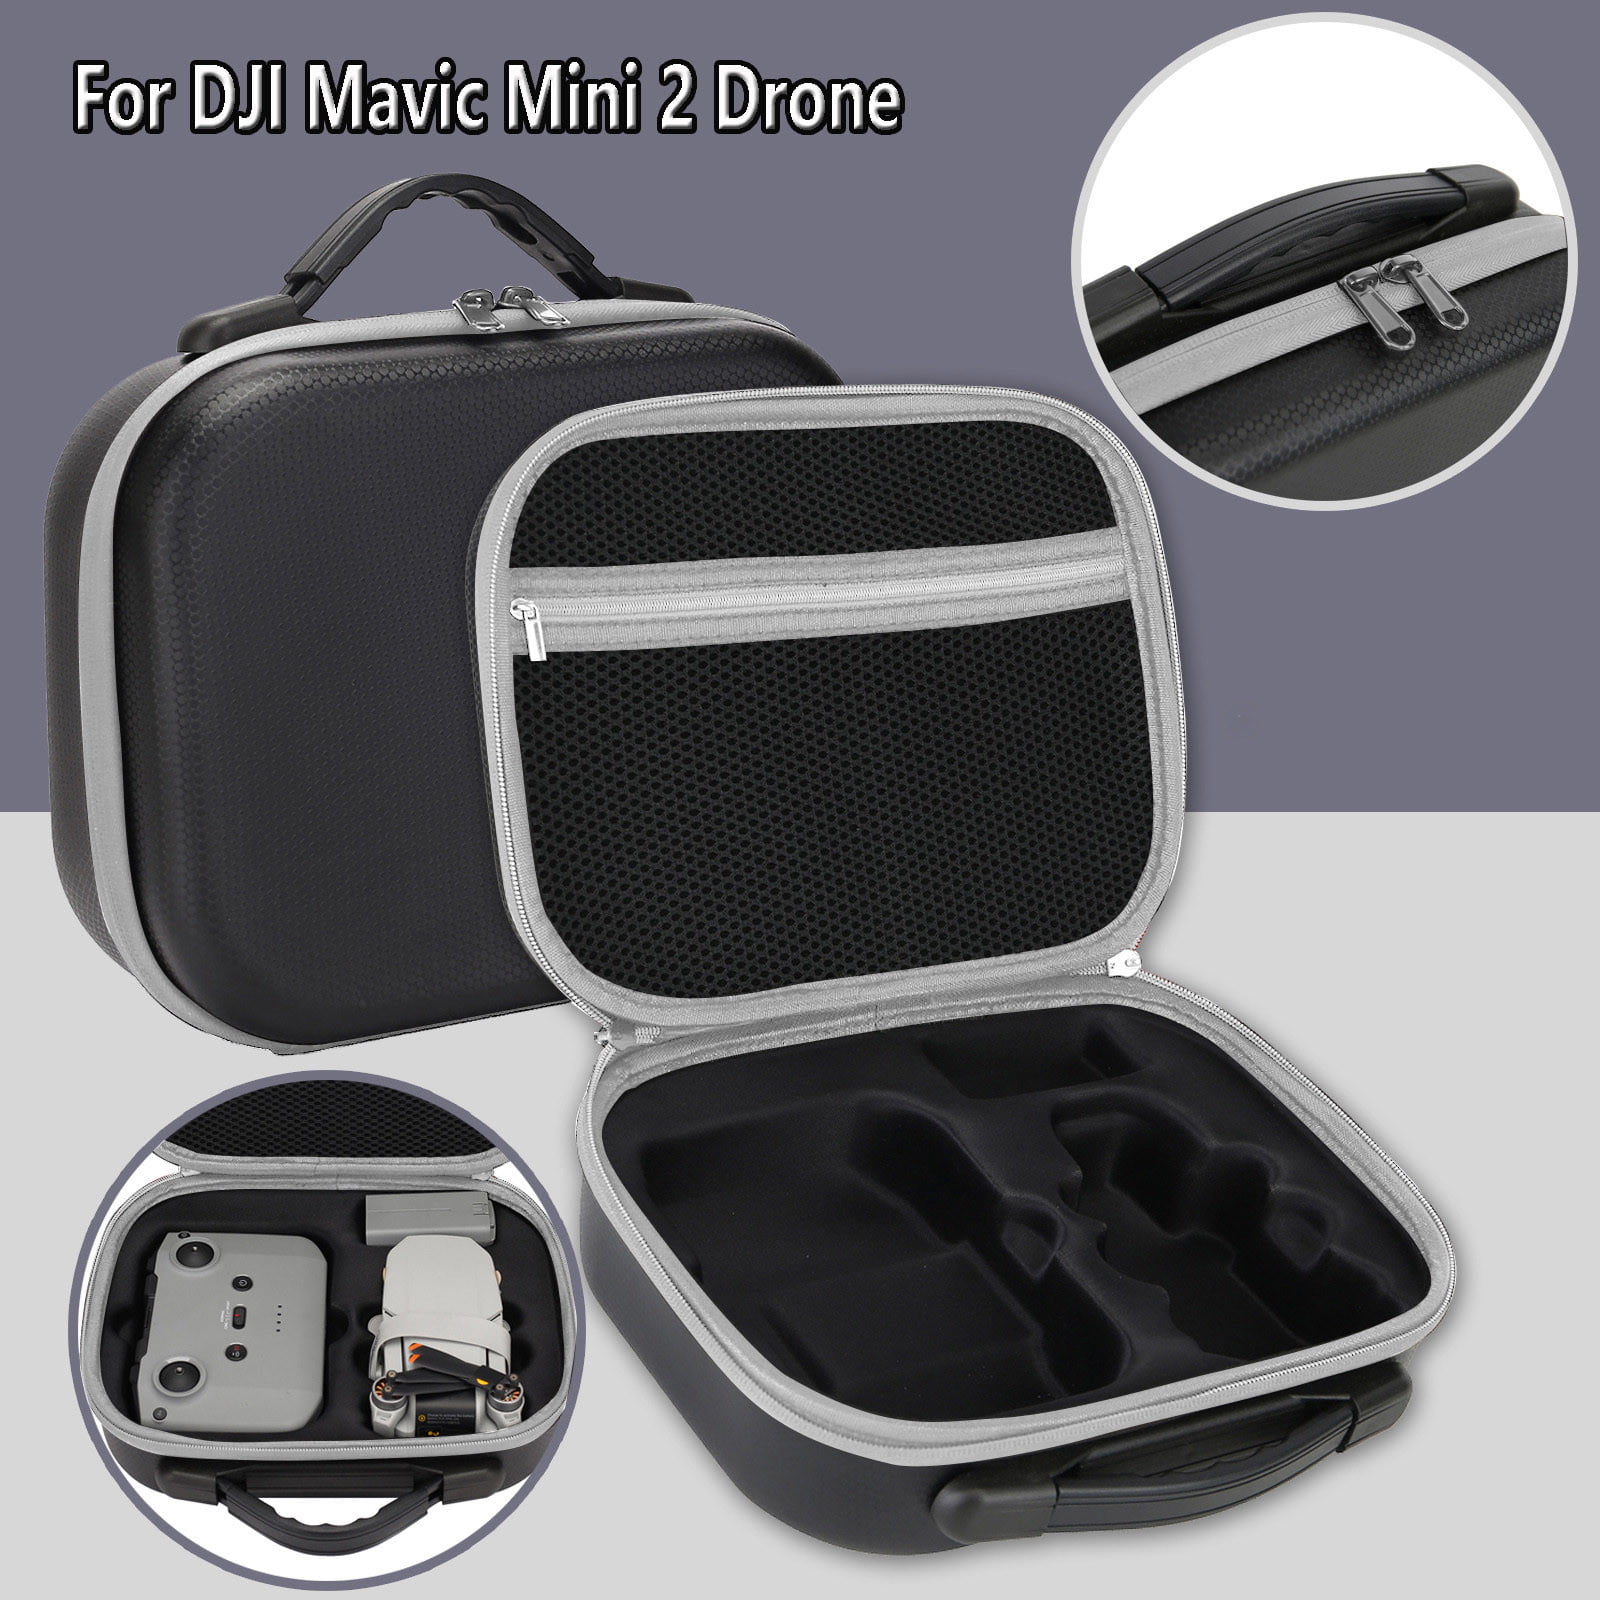 Mavic Mini 2 Waterproof Bag DJI Mini 2 Handbag Accessories DJI Mini and SE Carrying Bag Accessories DJI Mini 2 Bag Shoulder Bag for DJI Mavic Mini and Mini SE Drone Kit